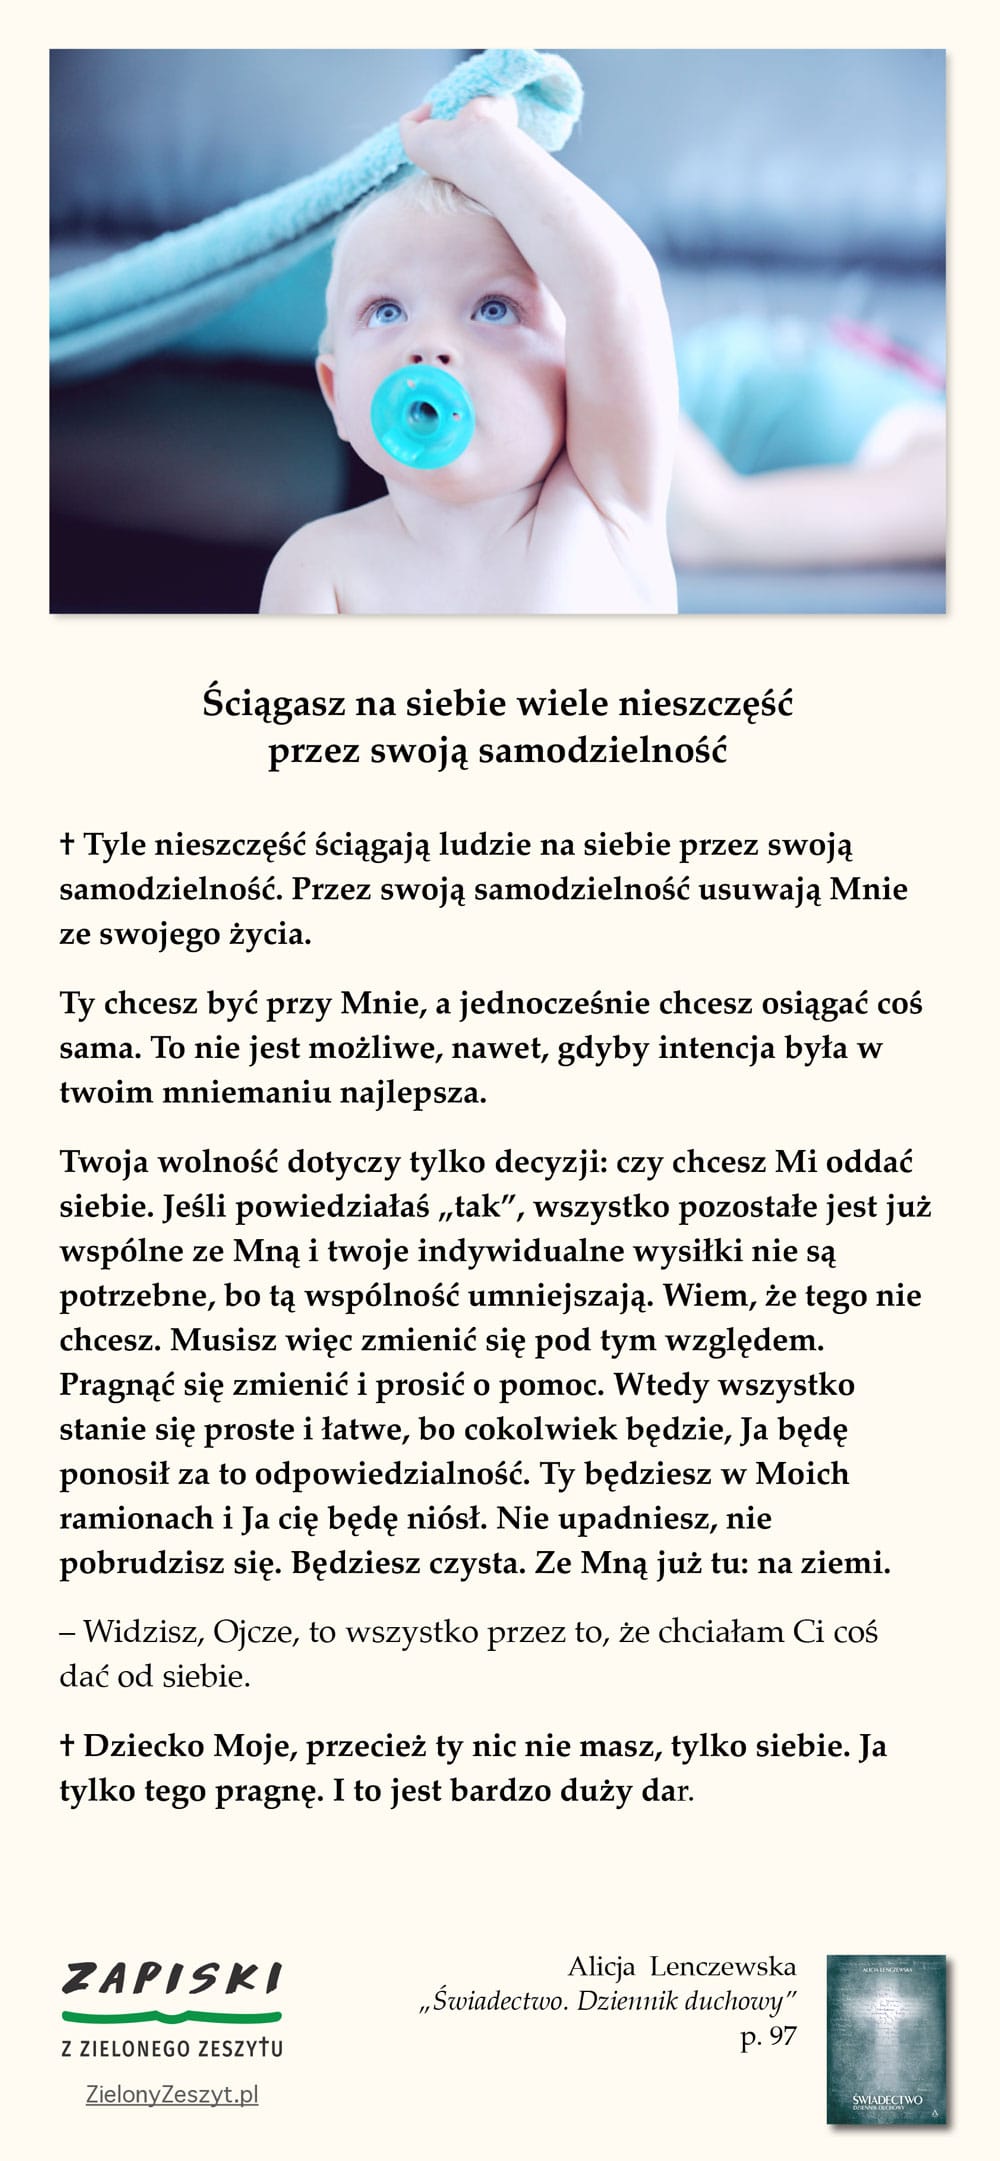 Alicja Lenczewska, „Świadectwo. Dziennik duchowy”, p. 98 (Ściągasz na siebie wiele nieszczęść przez swoją samodzielność)